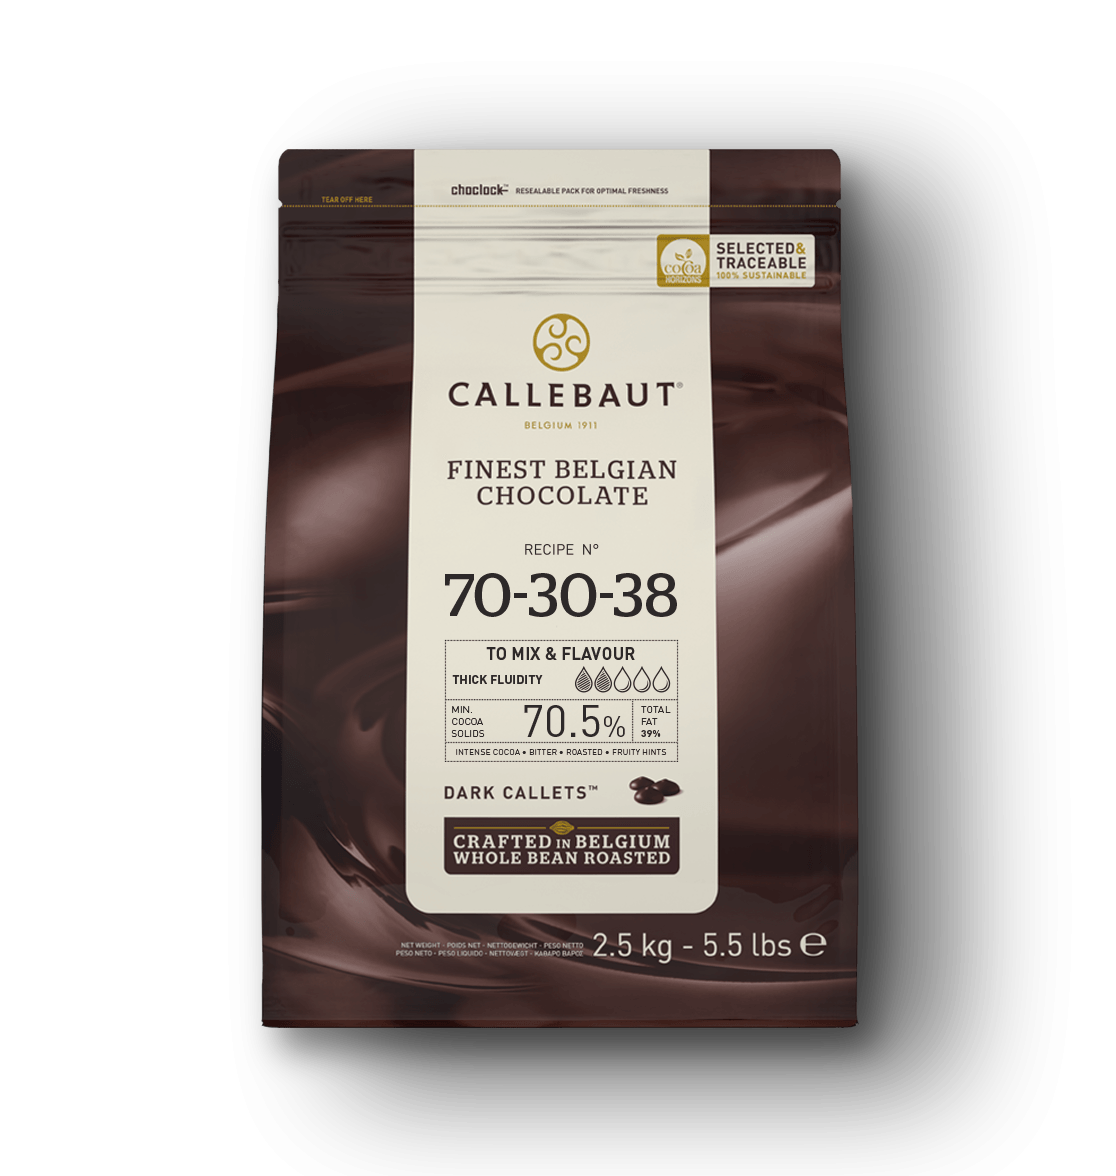 Dark Chocolate - 70-30-38 - 2.5kg Callets (1)